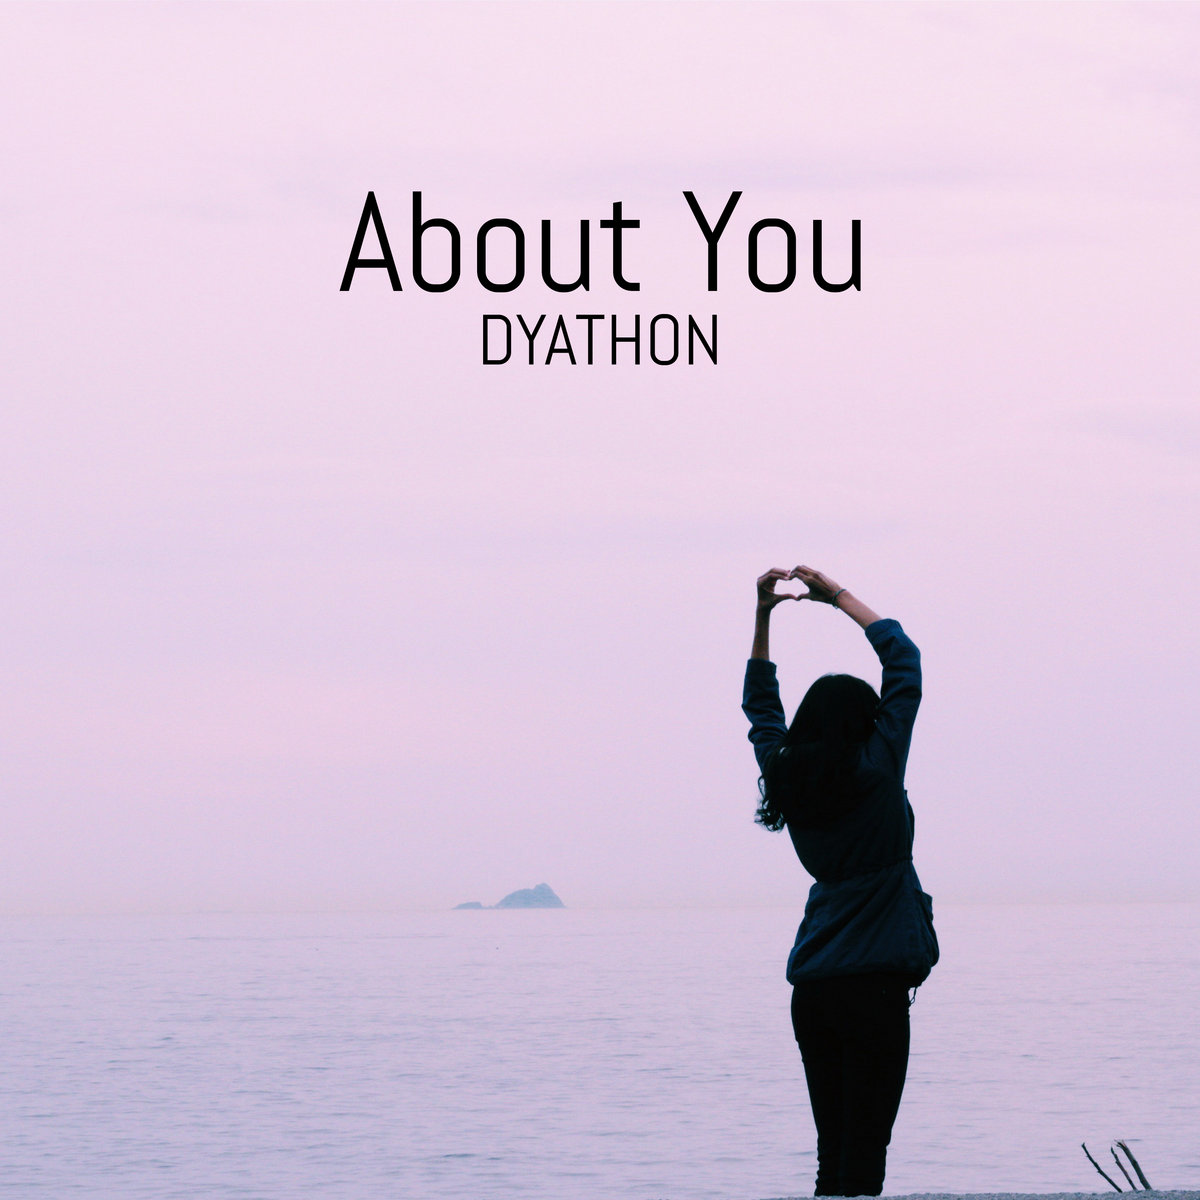 دانلود قطعه موسیقی About You توسط DYATHON